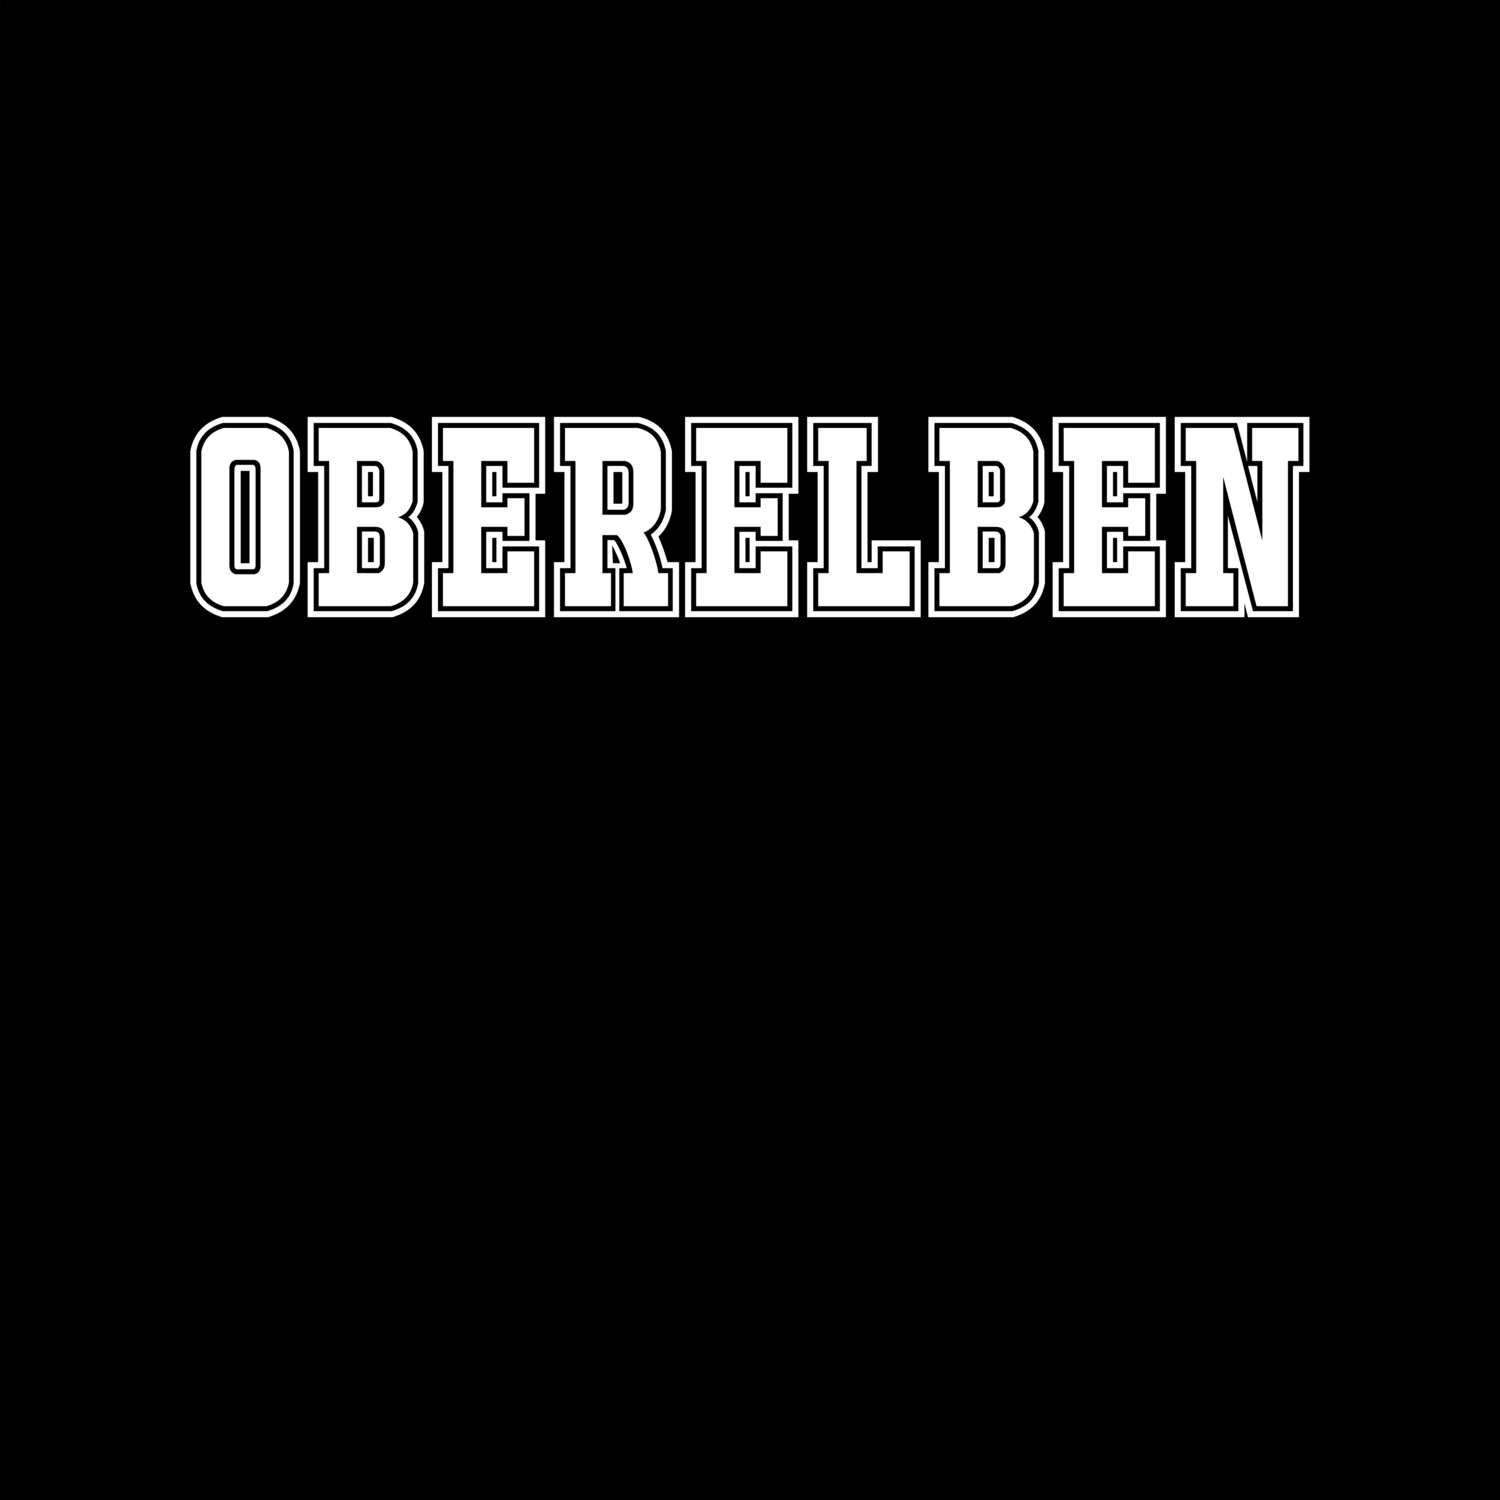 Oberelben T-Shirt »Classic«